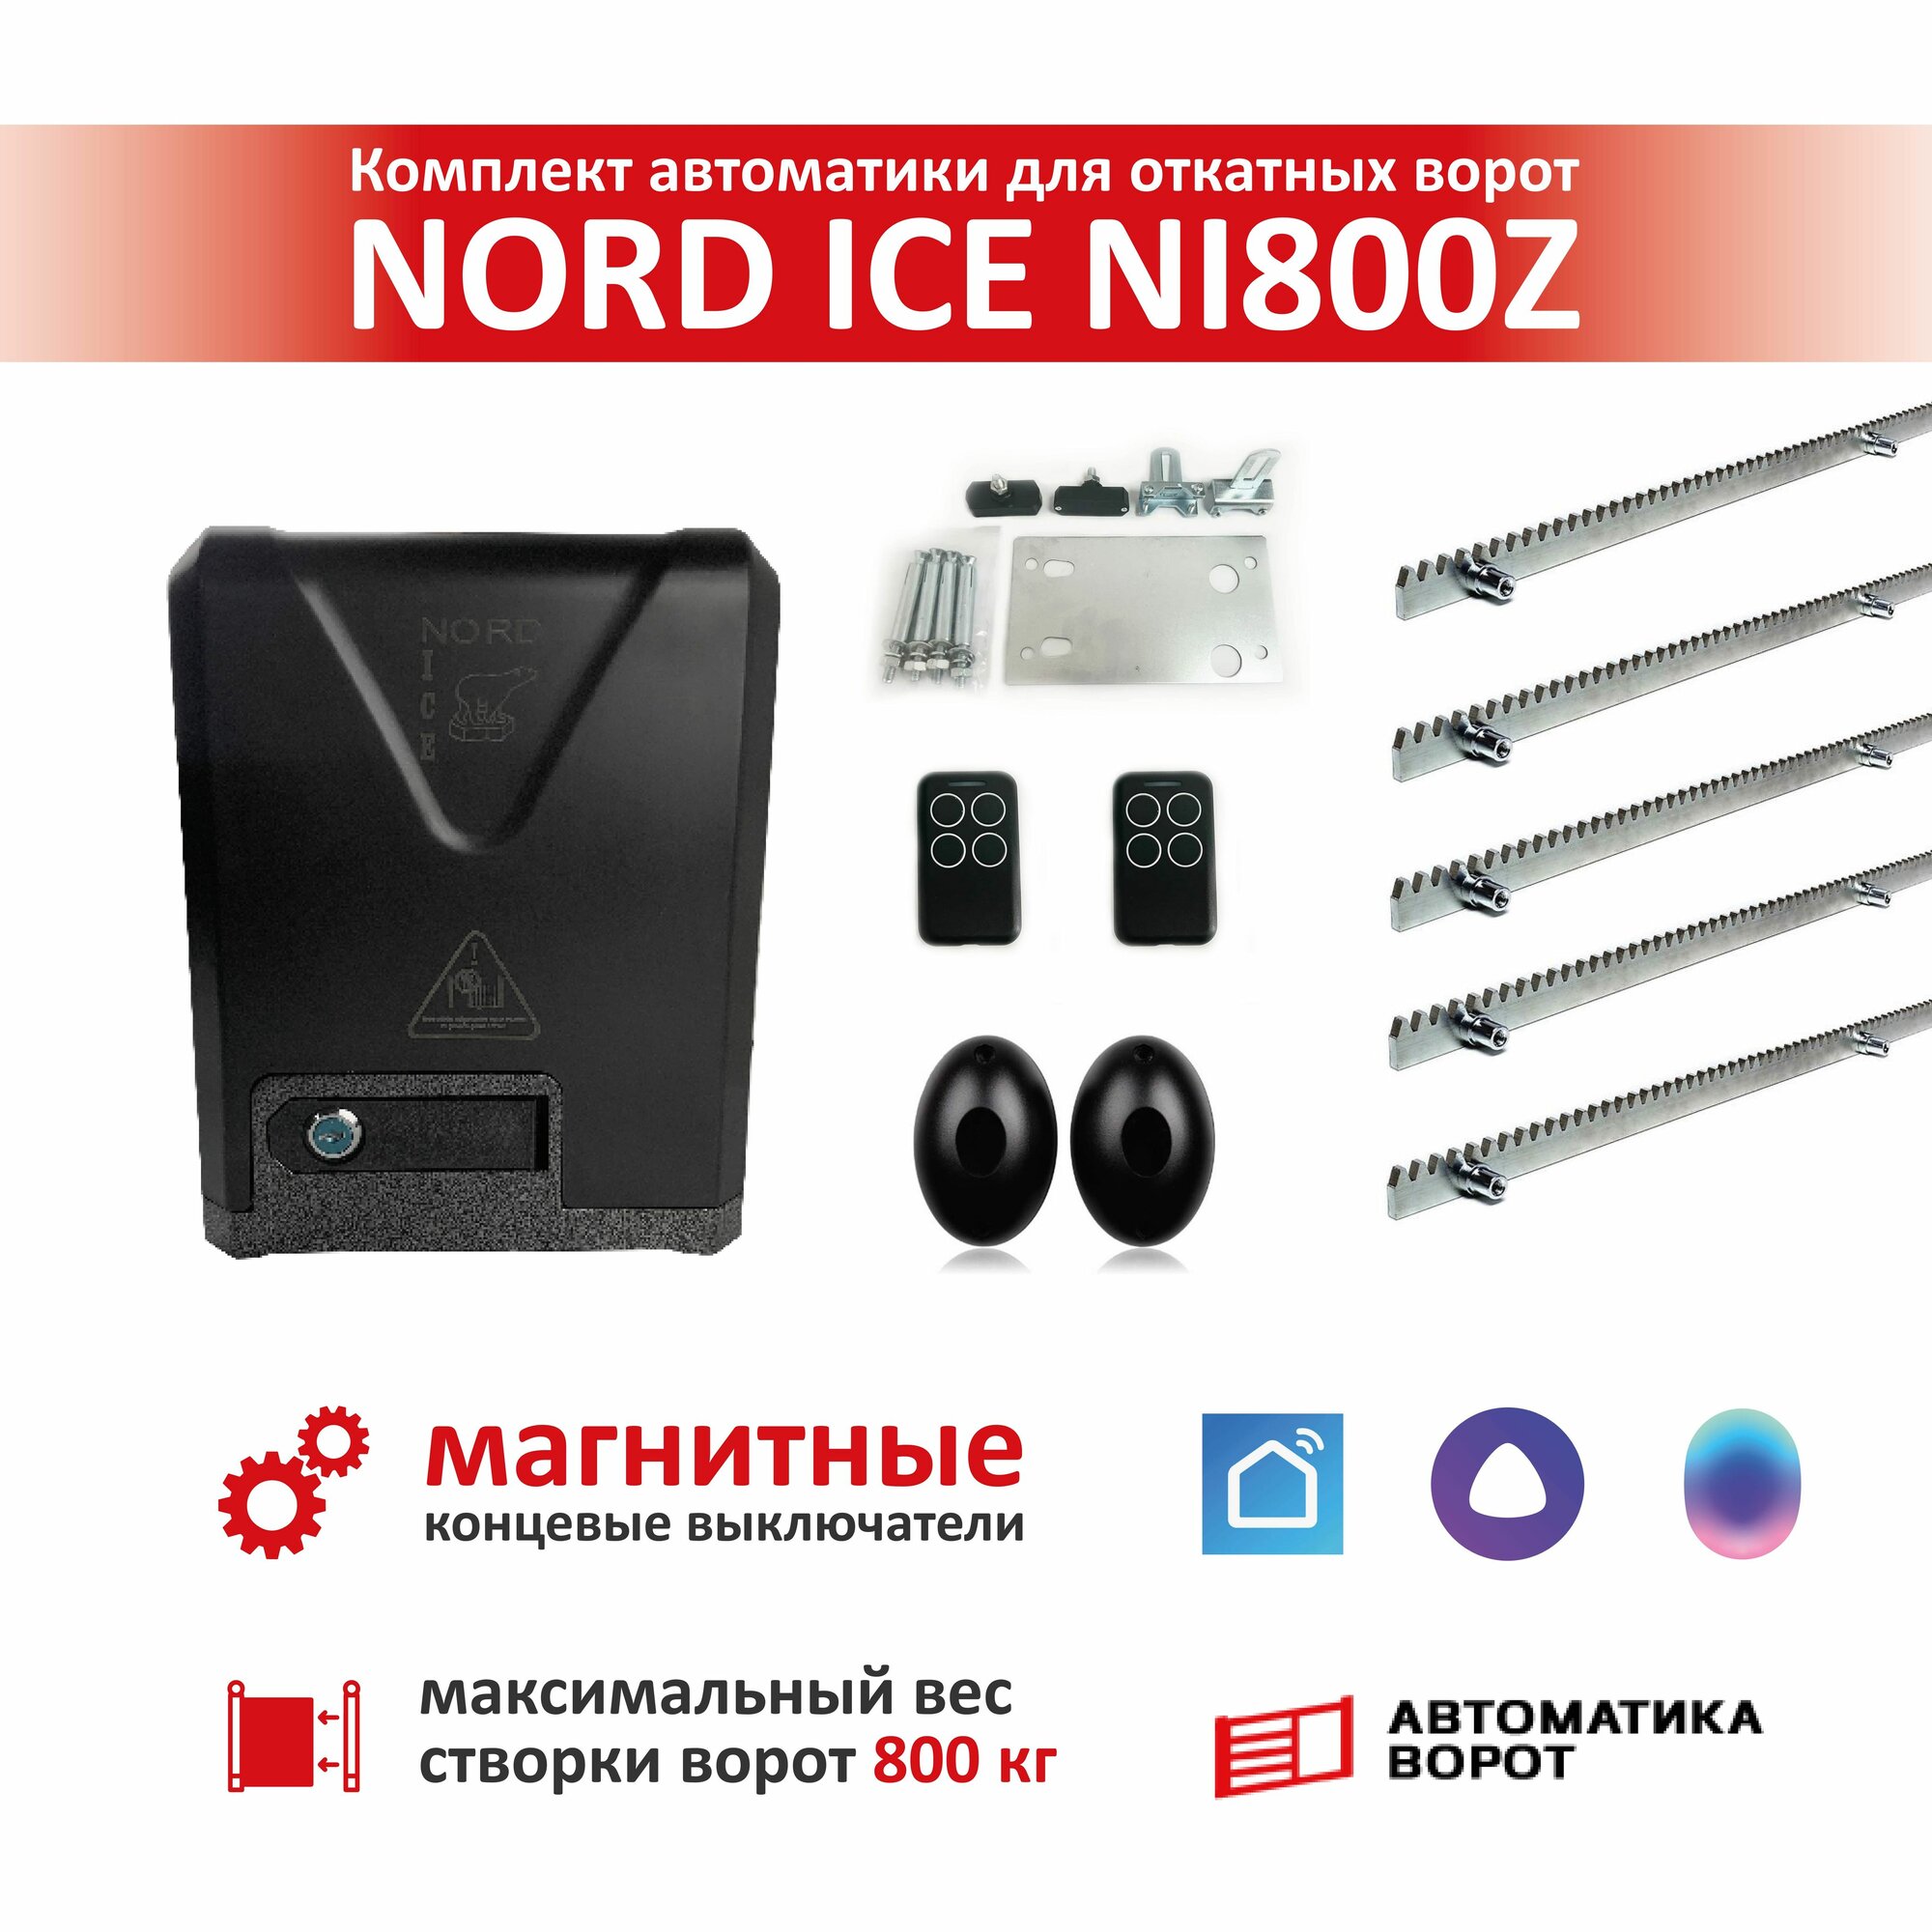 Комплект привода для откатных ворот NORD ICE NI800Z + зубчатая рейка (5 шт) фотоэлементы YS-119 (магнитные концевые выключатели) / Максимальный вес ворот: 800кг